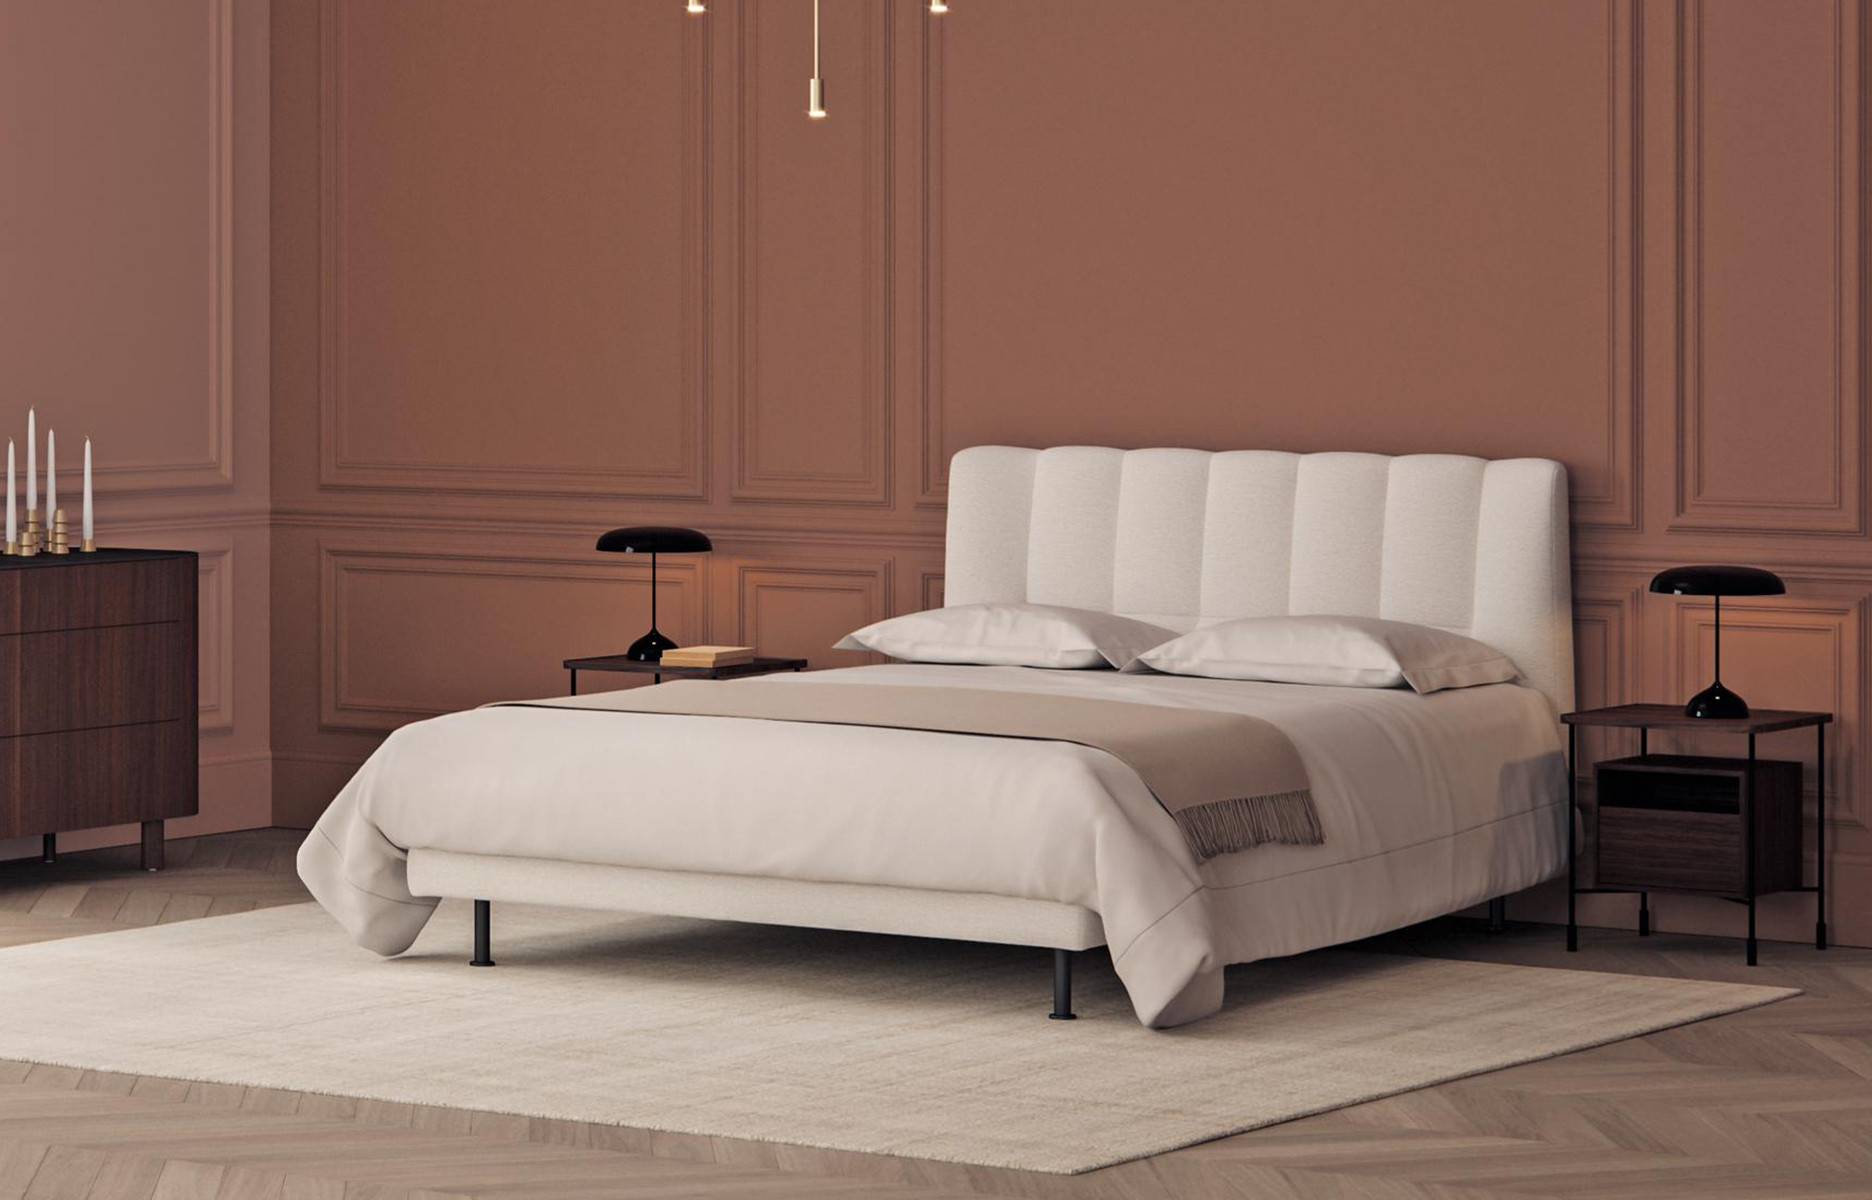 Bout de lit chic - Mobilier pour hôtellerie haut de gamme